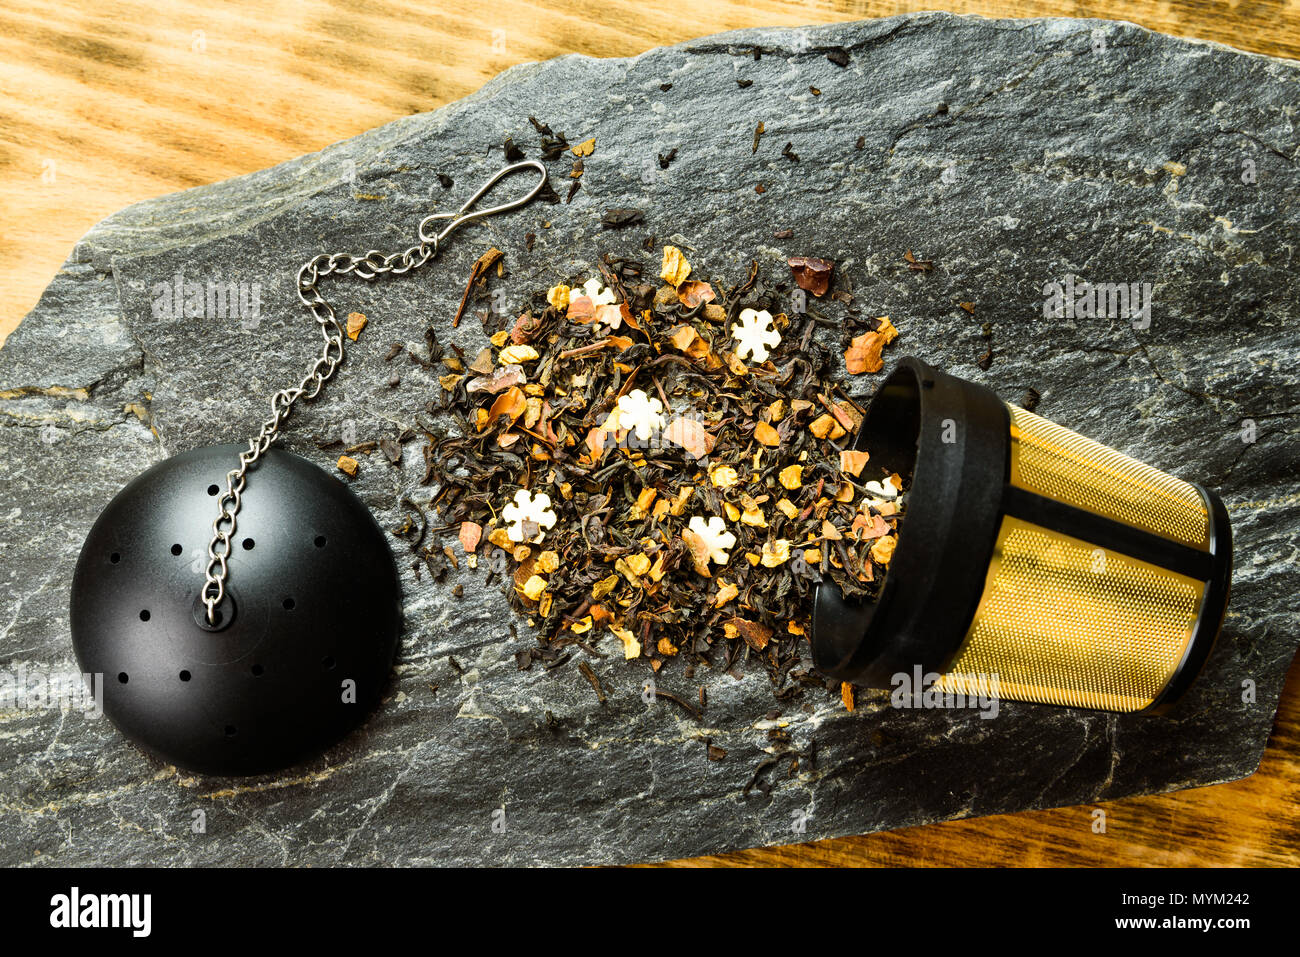 Thé noir aromatisé dispersés à l'extérieur d'un infuseur à thé plaqué or sur une dalle de pierre. Couvercle avec la chaîne à l'autre. Banque D'Images